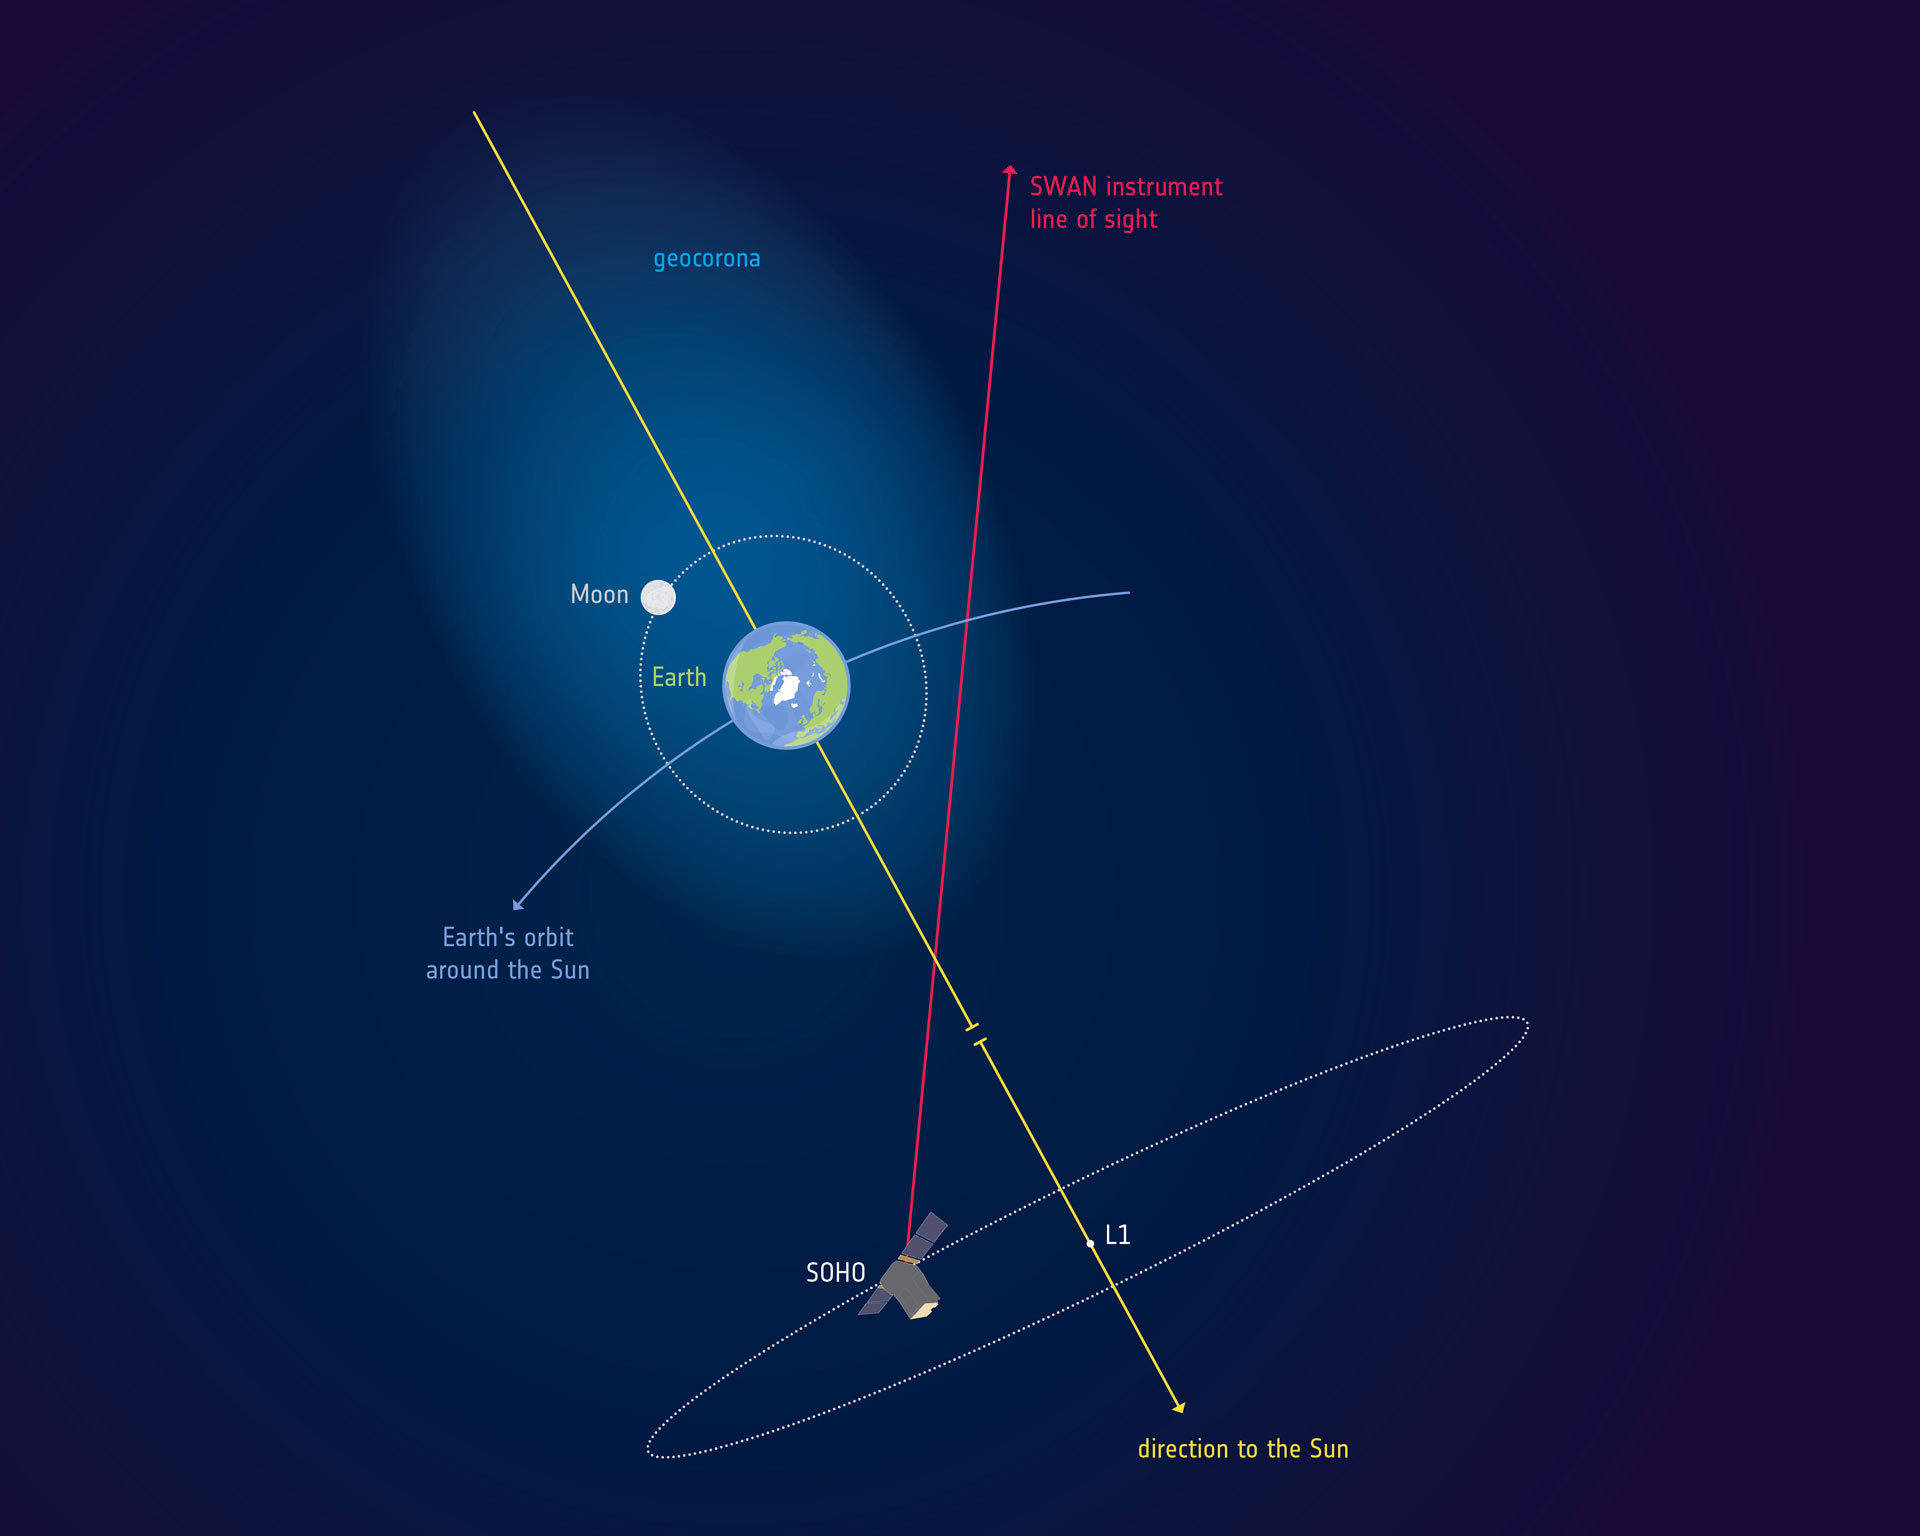 تاج هیدروژنی زمین فراتر از مدار ماه ادامه دارد! 1